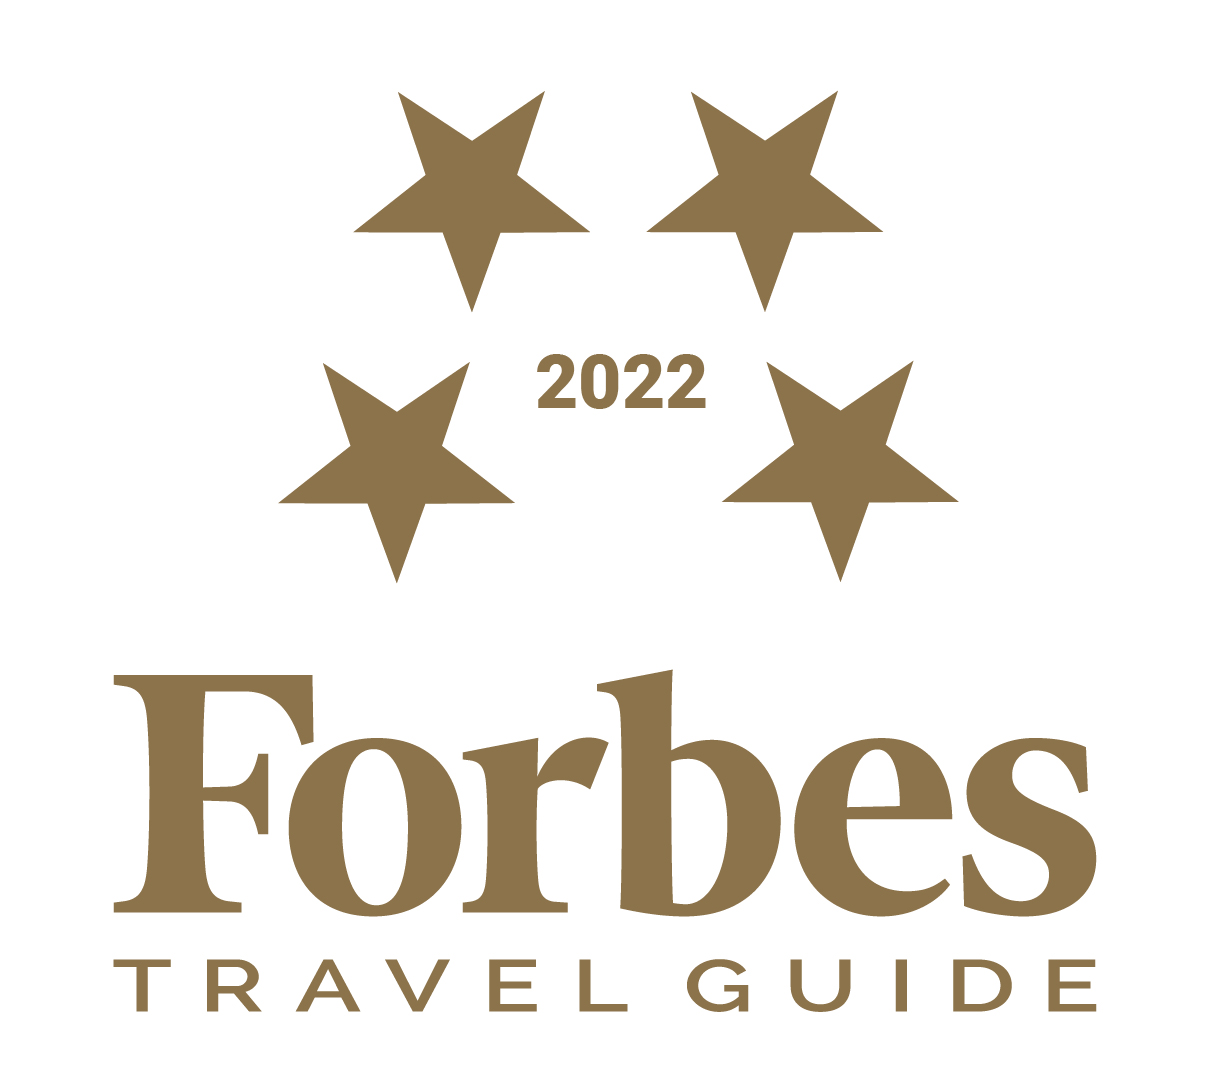 榮獲2022年富比士旅遊指南四星級評等，連續3年蟬聯四星級認證